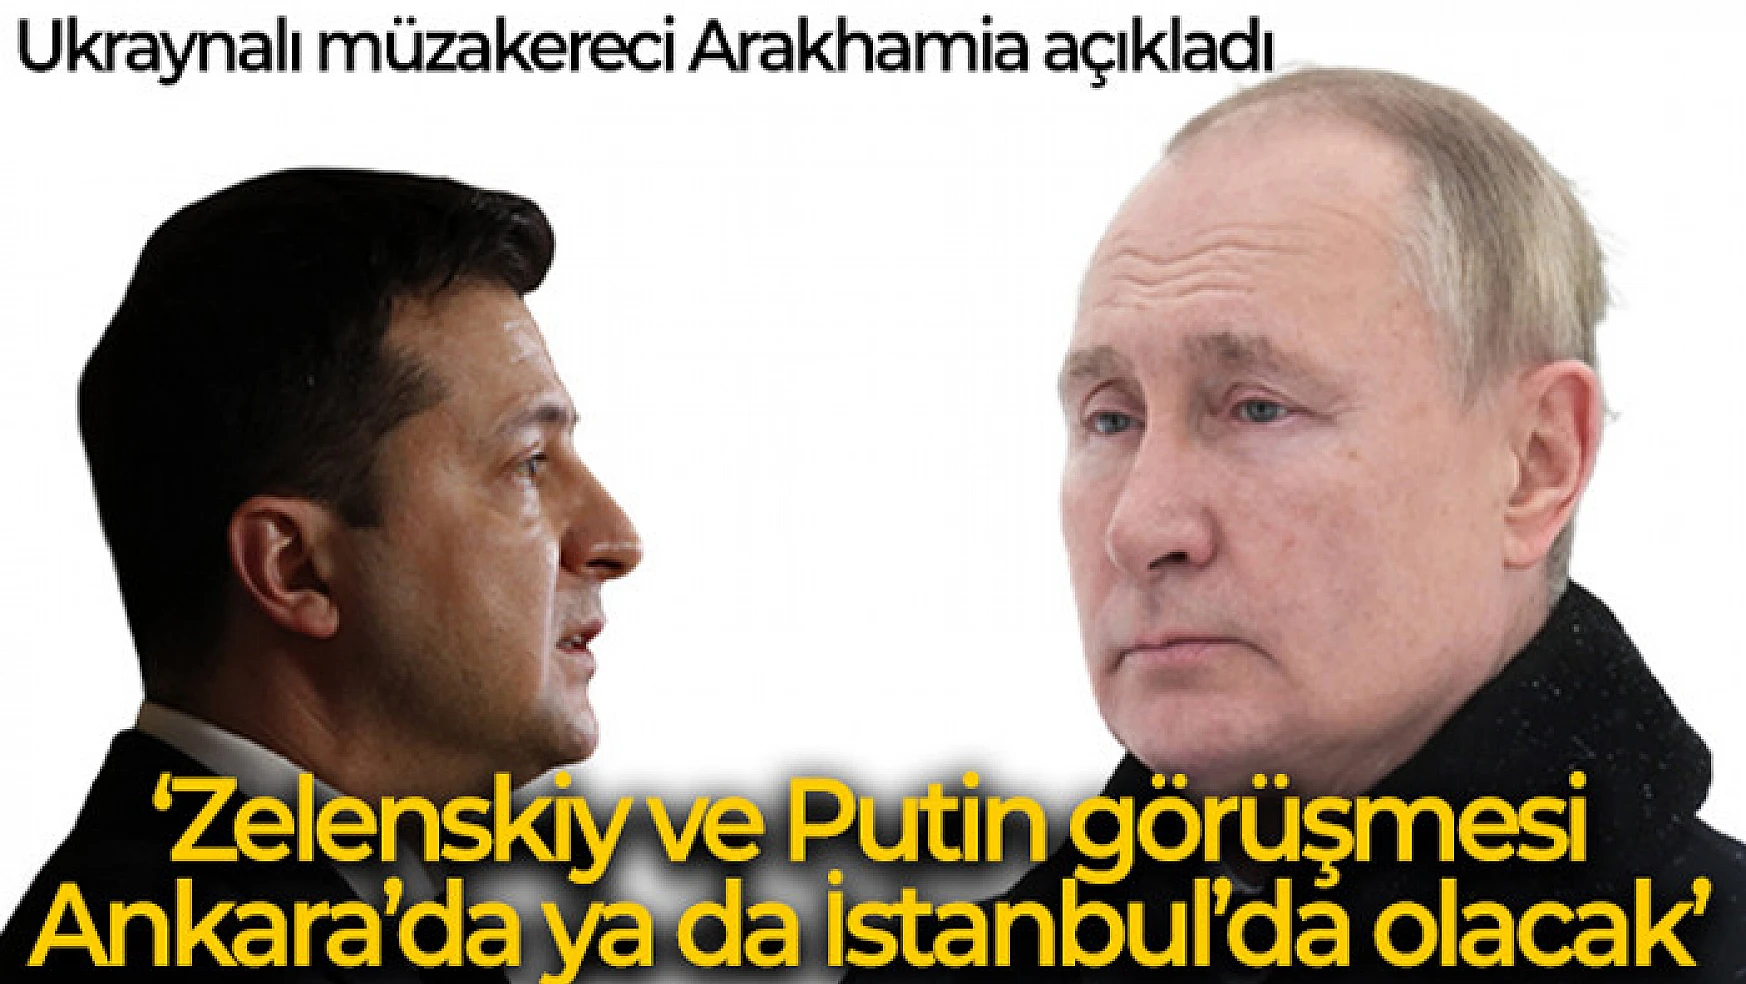 Ukraynalı müzakereci Arakhamia: 'Zelenskiy ve Putin görüşmesi ya Ankara'da ya da İstanbul'da olacak'